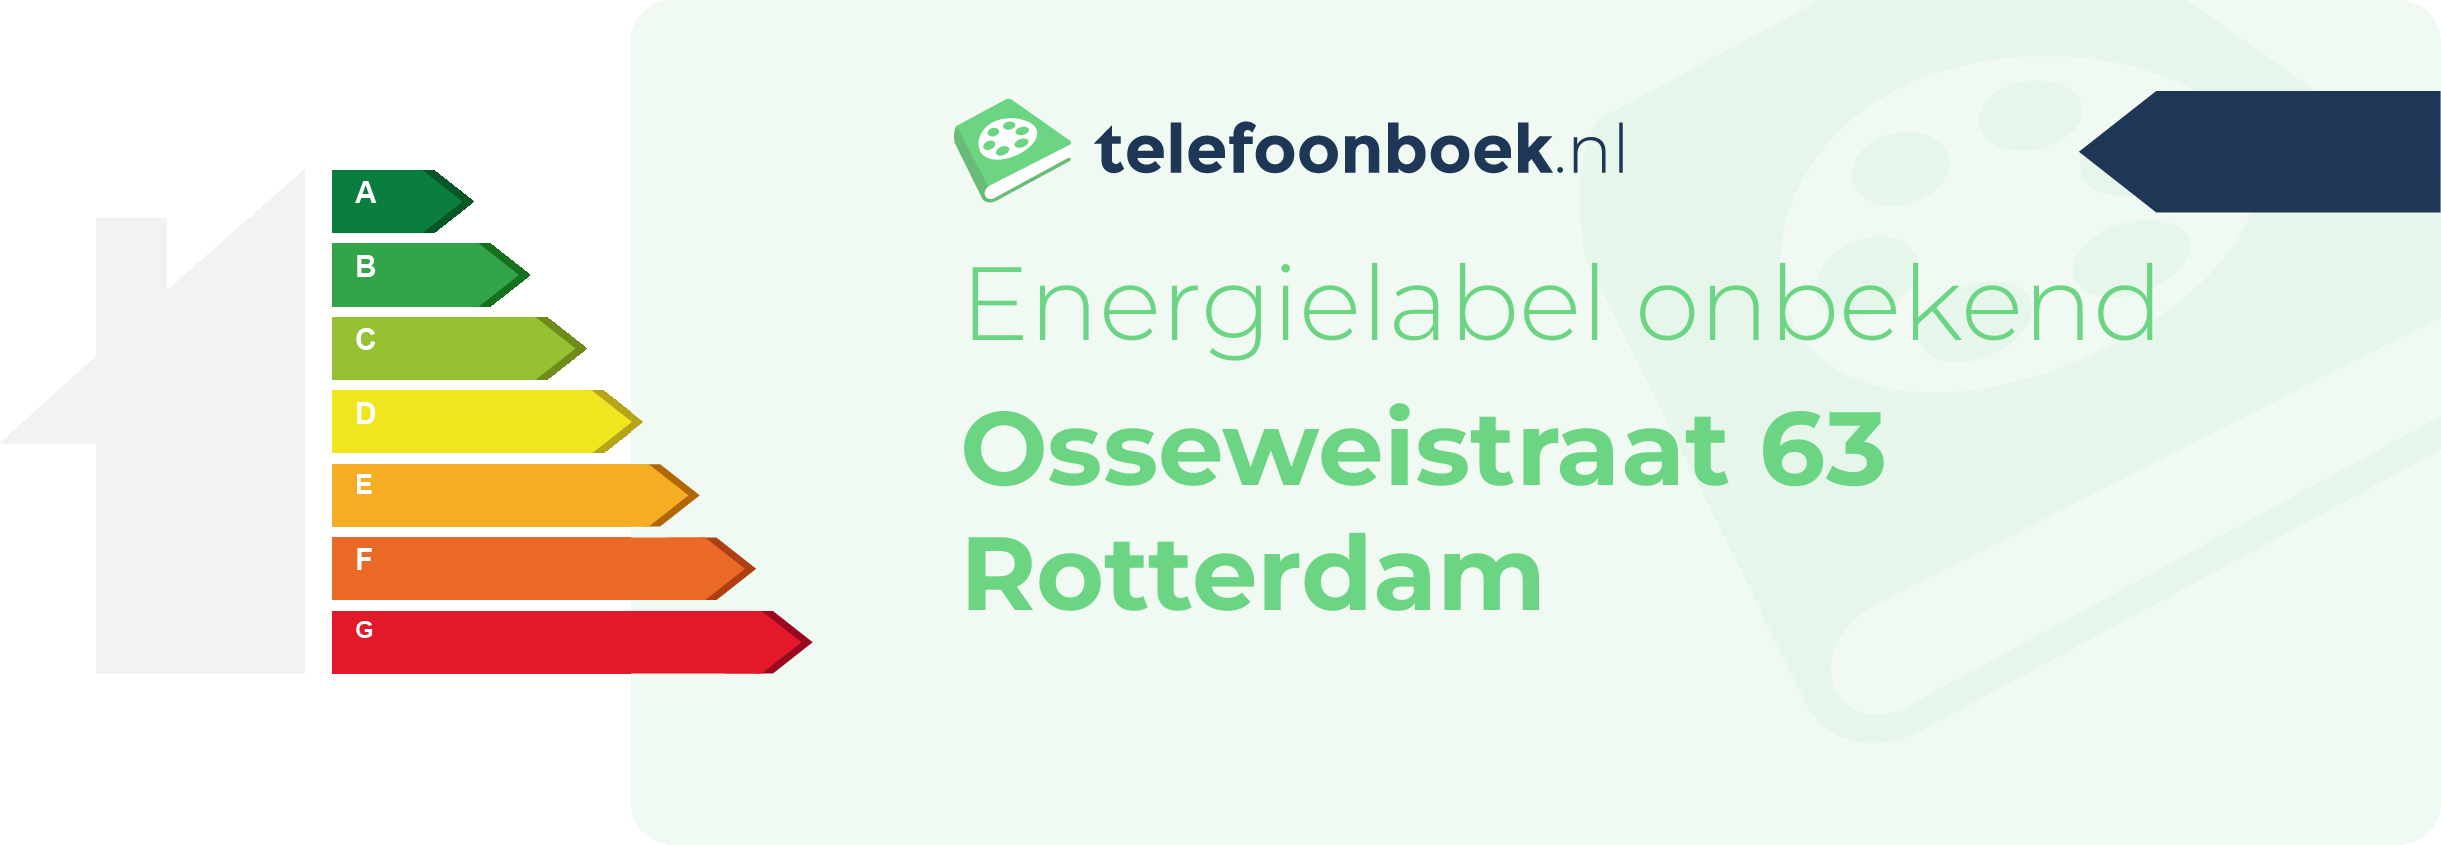 Energielabel Osseweistraat 63 Rotterdam